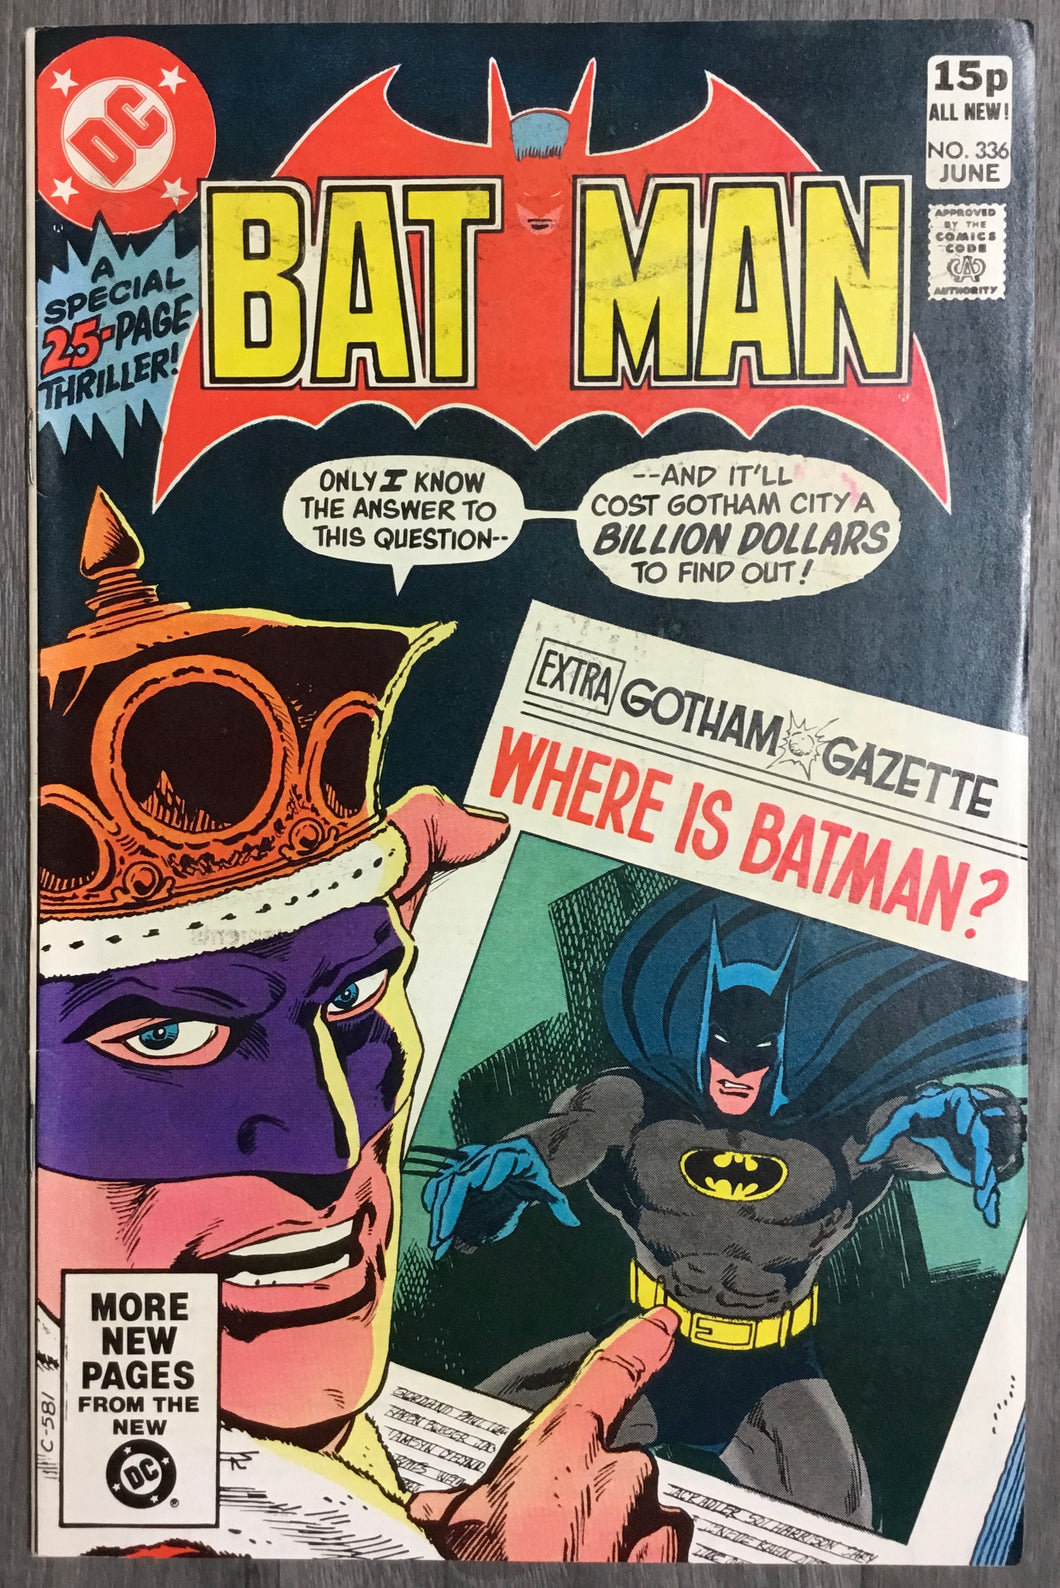 Batman No. #336 1981 DC Comics